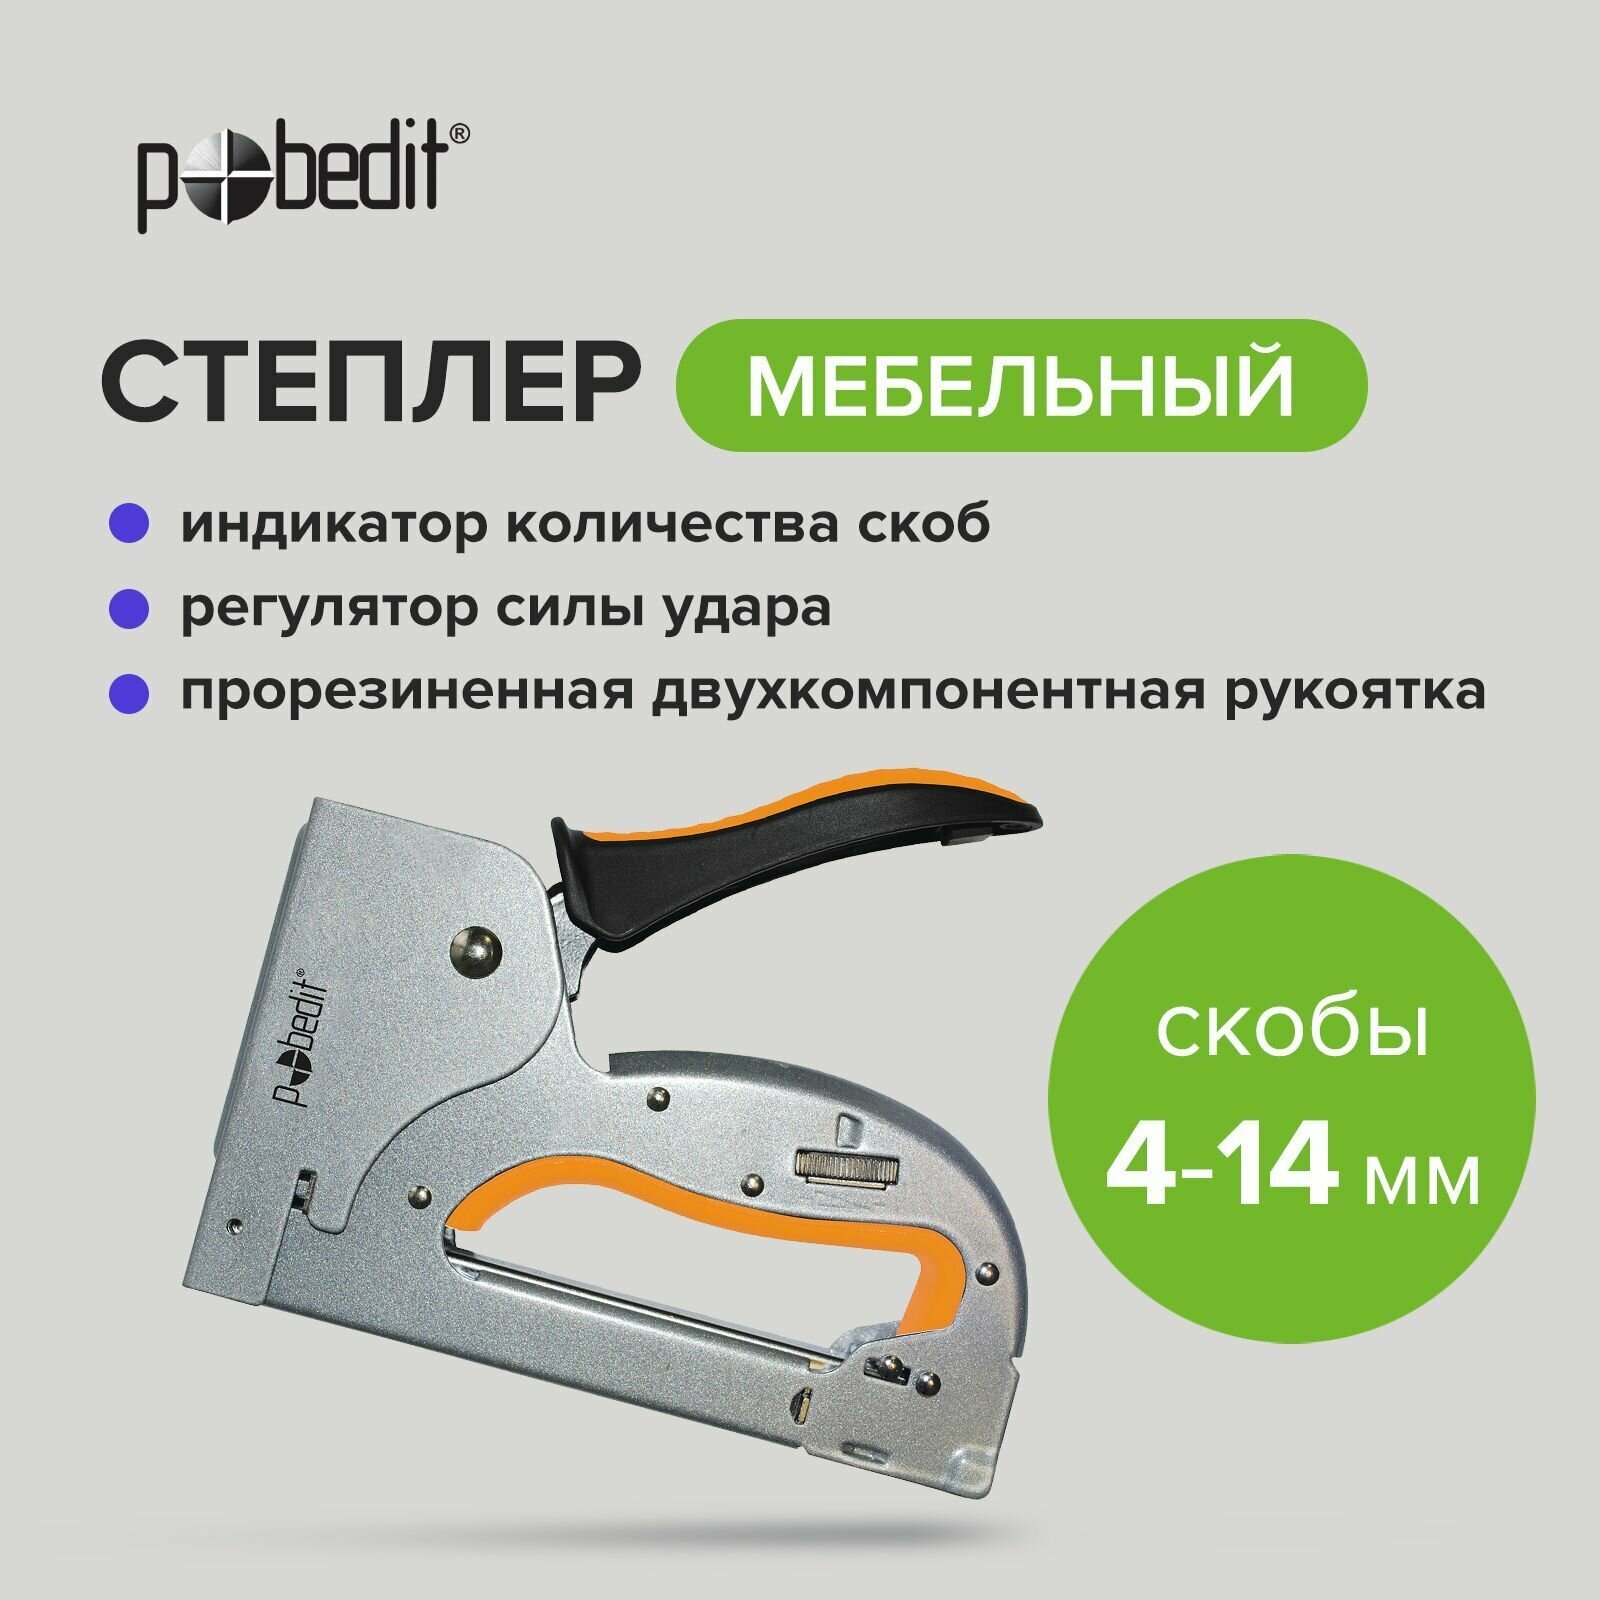 Степлер мебельный металлический скобы 4-14 мм Pobedit